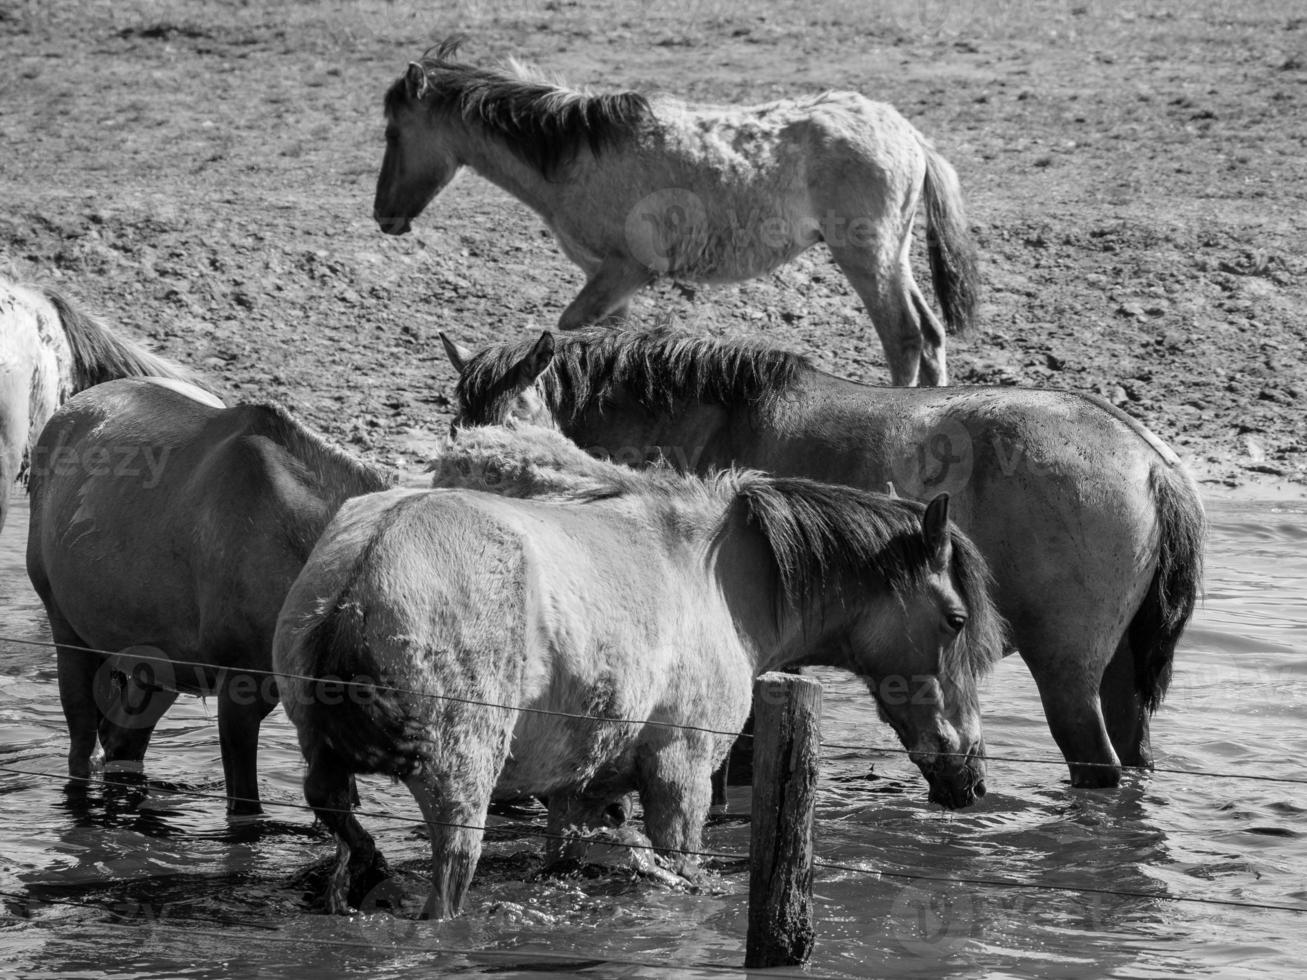 caballos en un prado alemán foto